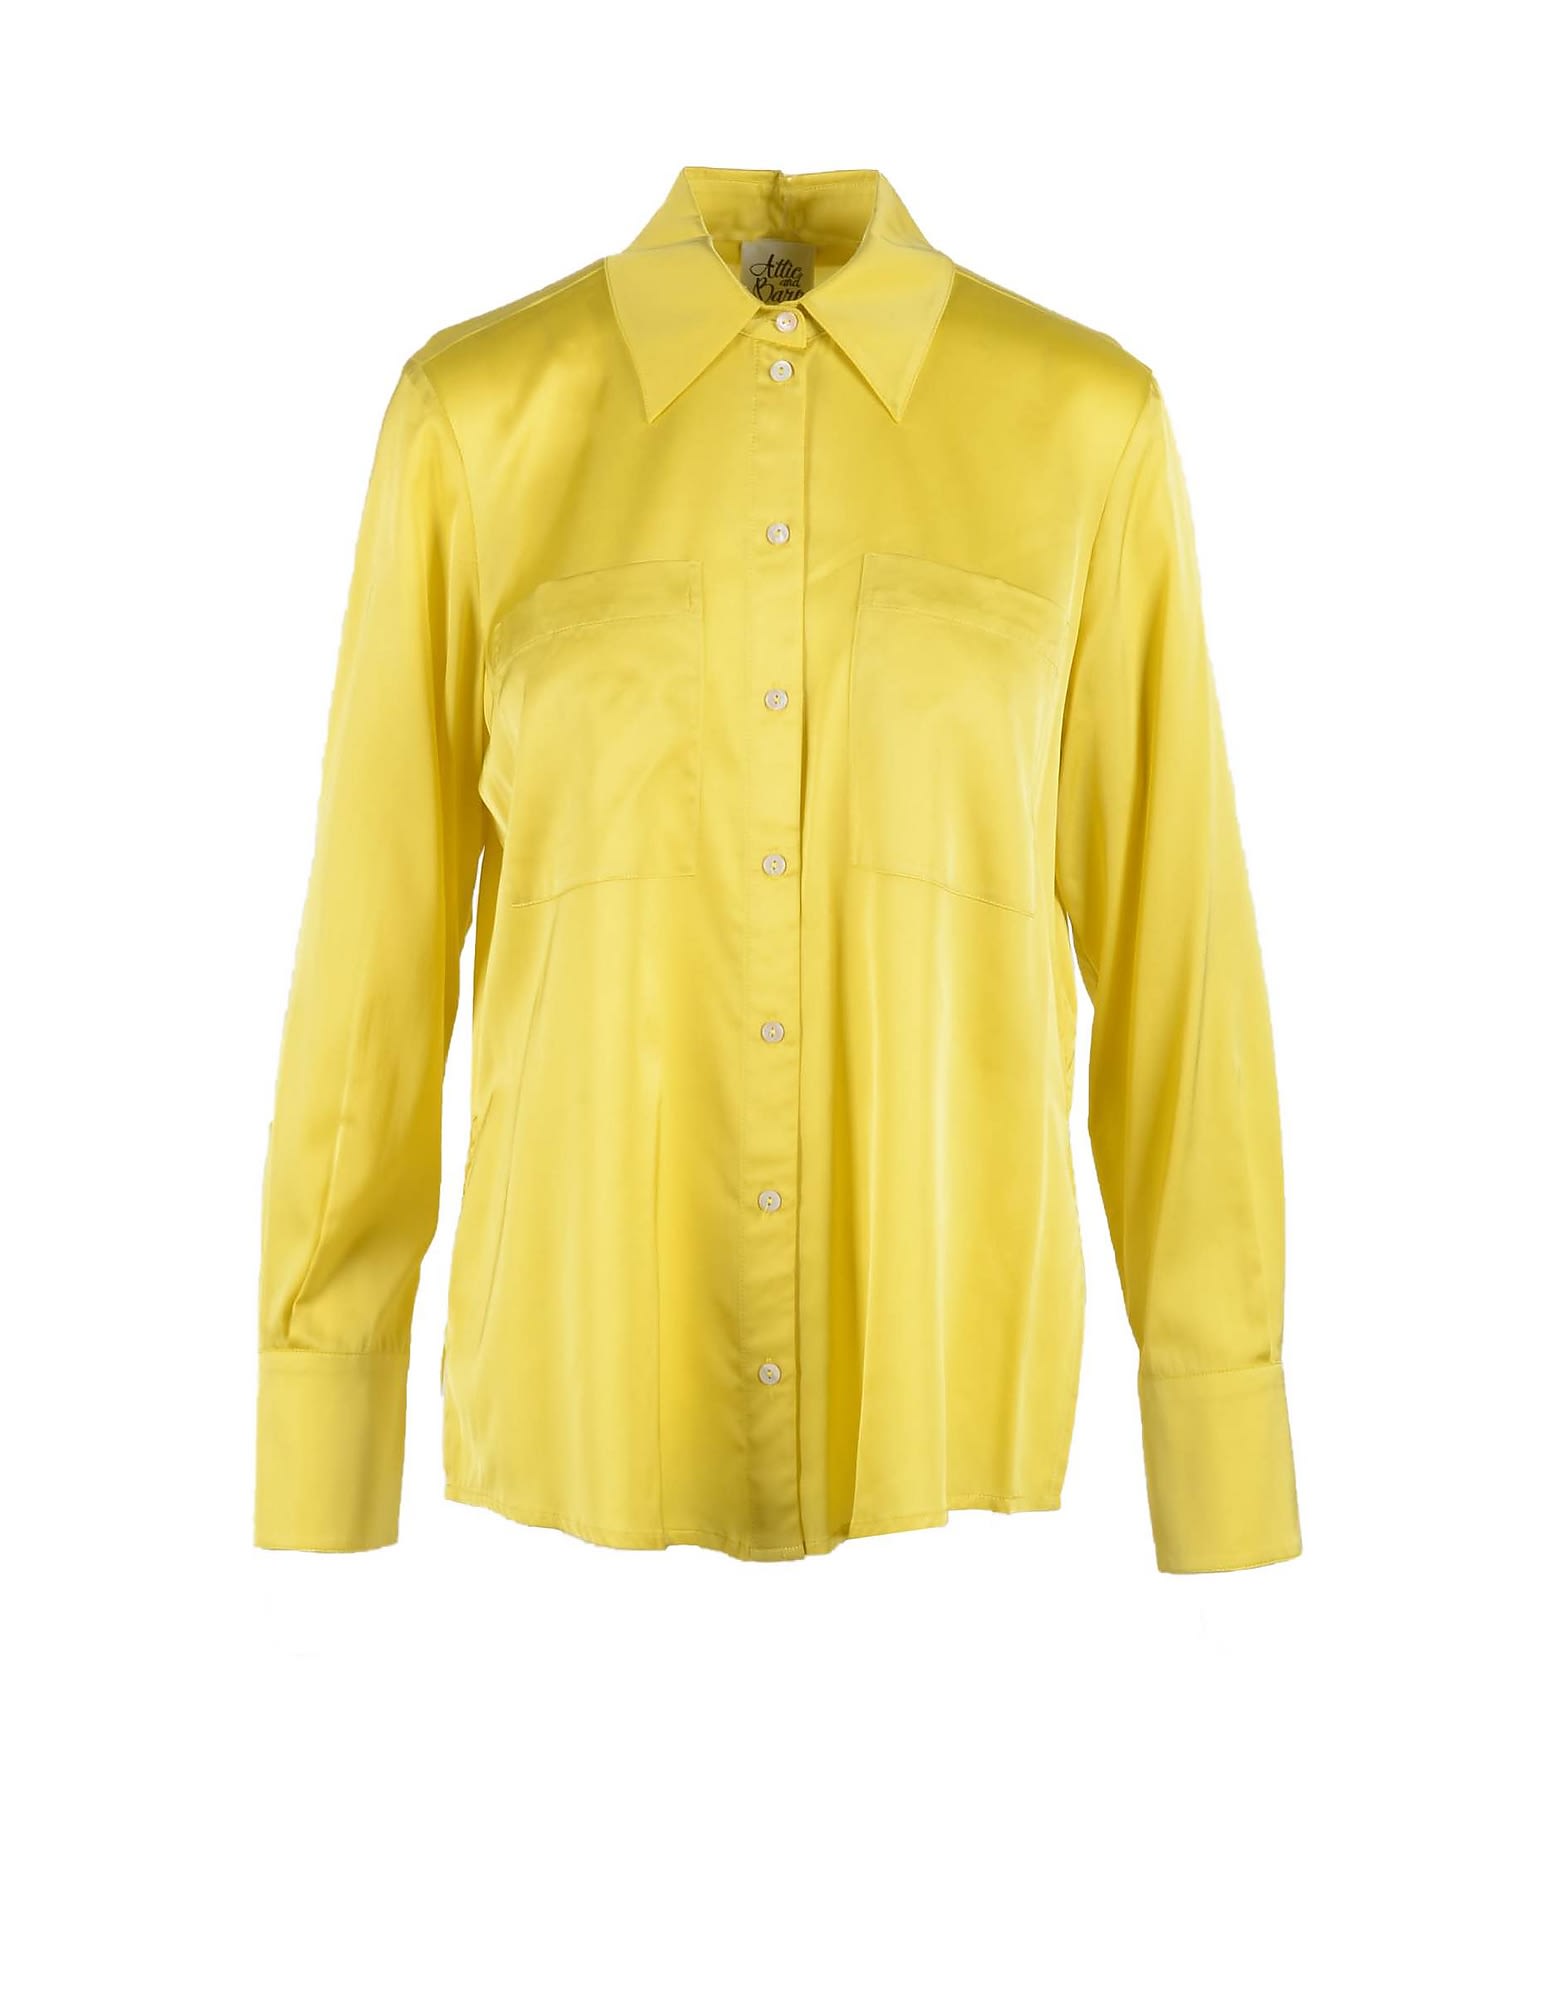 Attic and Barn Womens Yellow Shirt